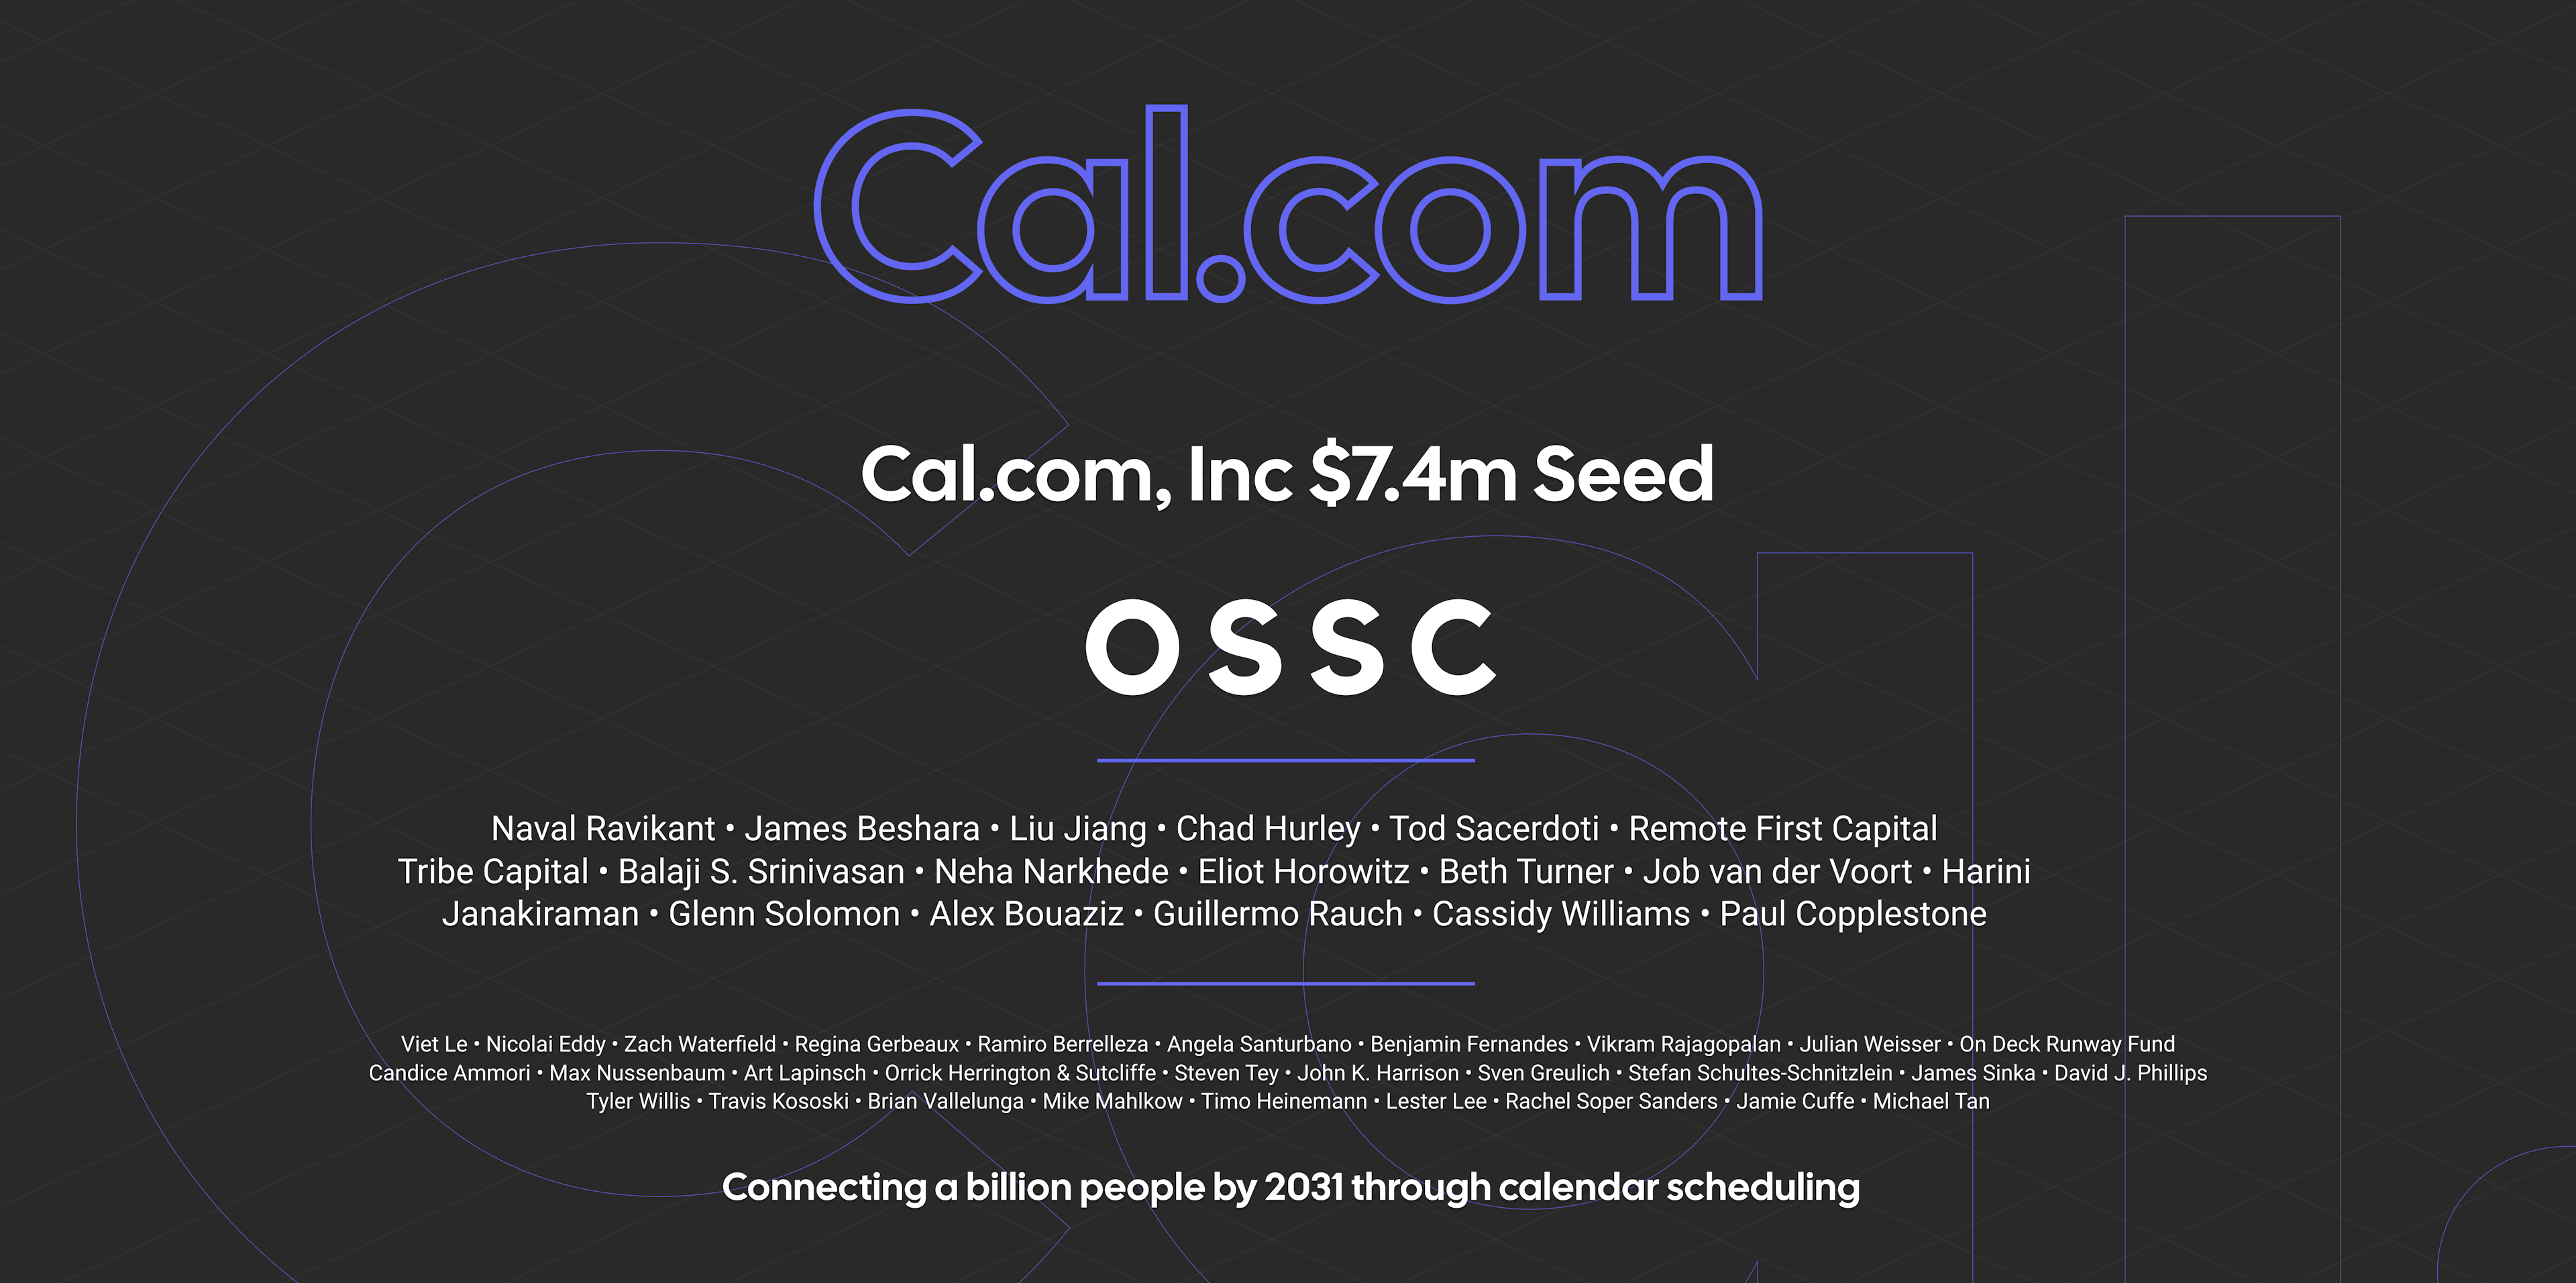 Cal.com, Inc. raises $7.4m Seed